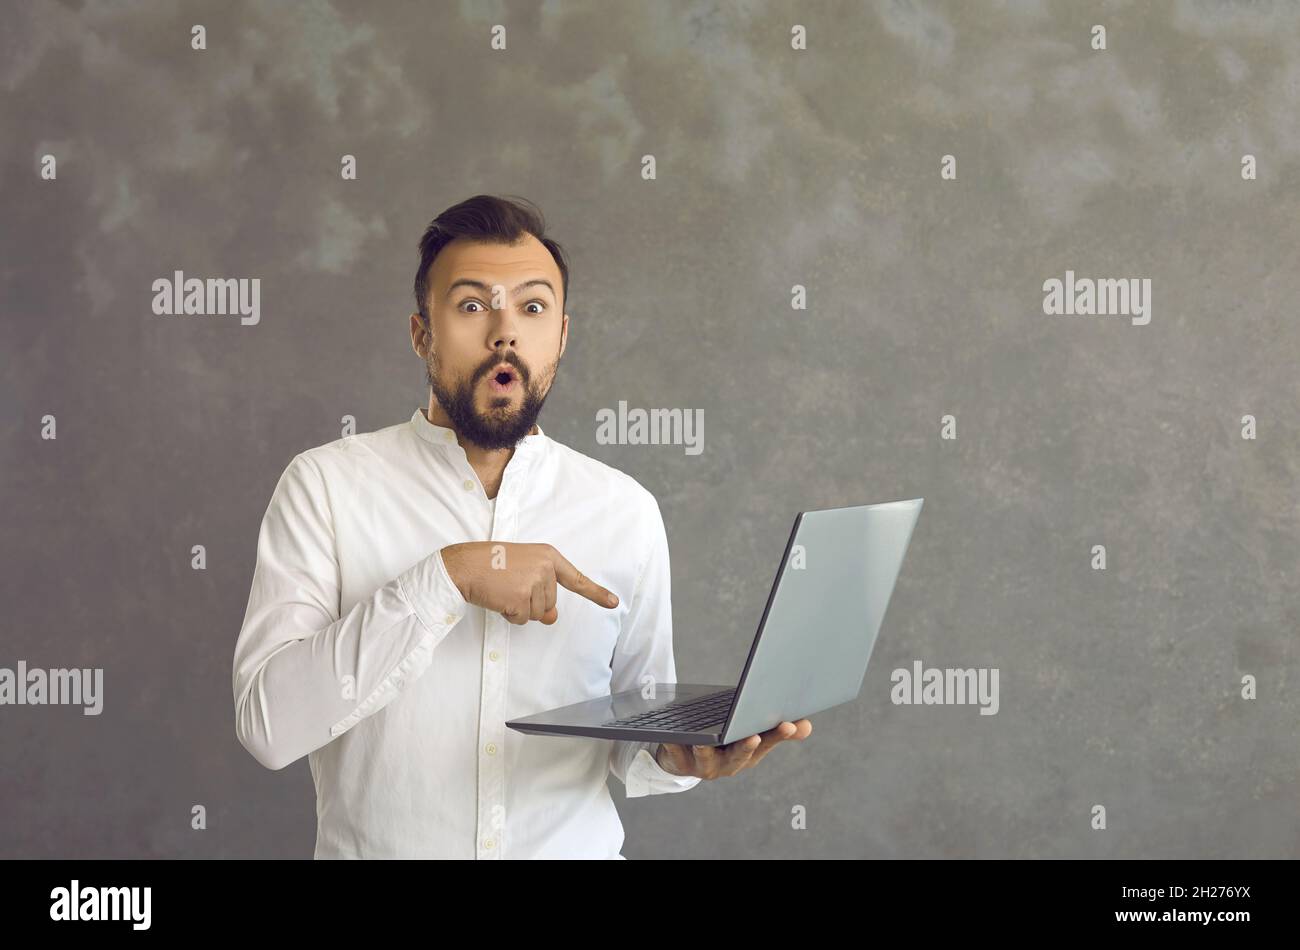 Un homme choqué pointe un doigt sur son ordinateur portable, qu'il tient dans sa main debout sur un fond gris. Banque D'Images